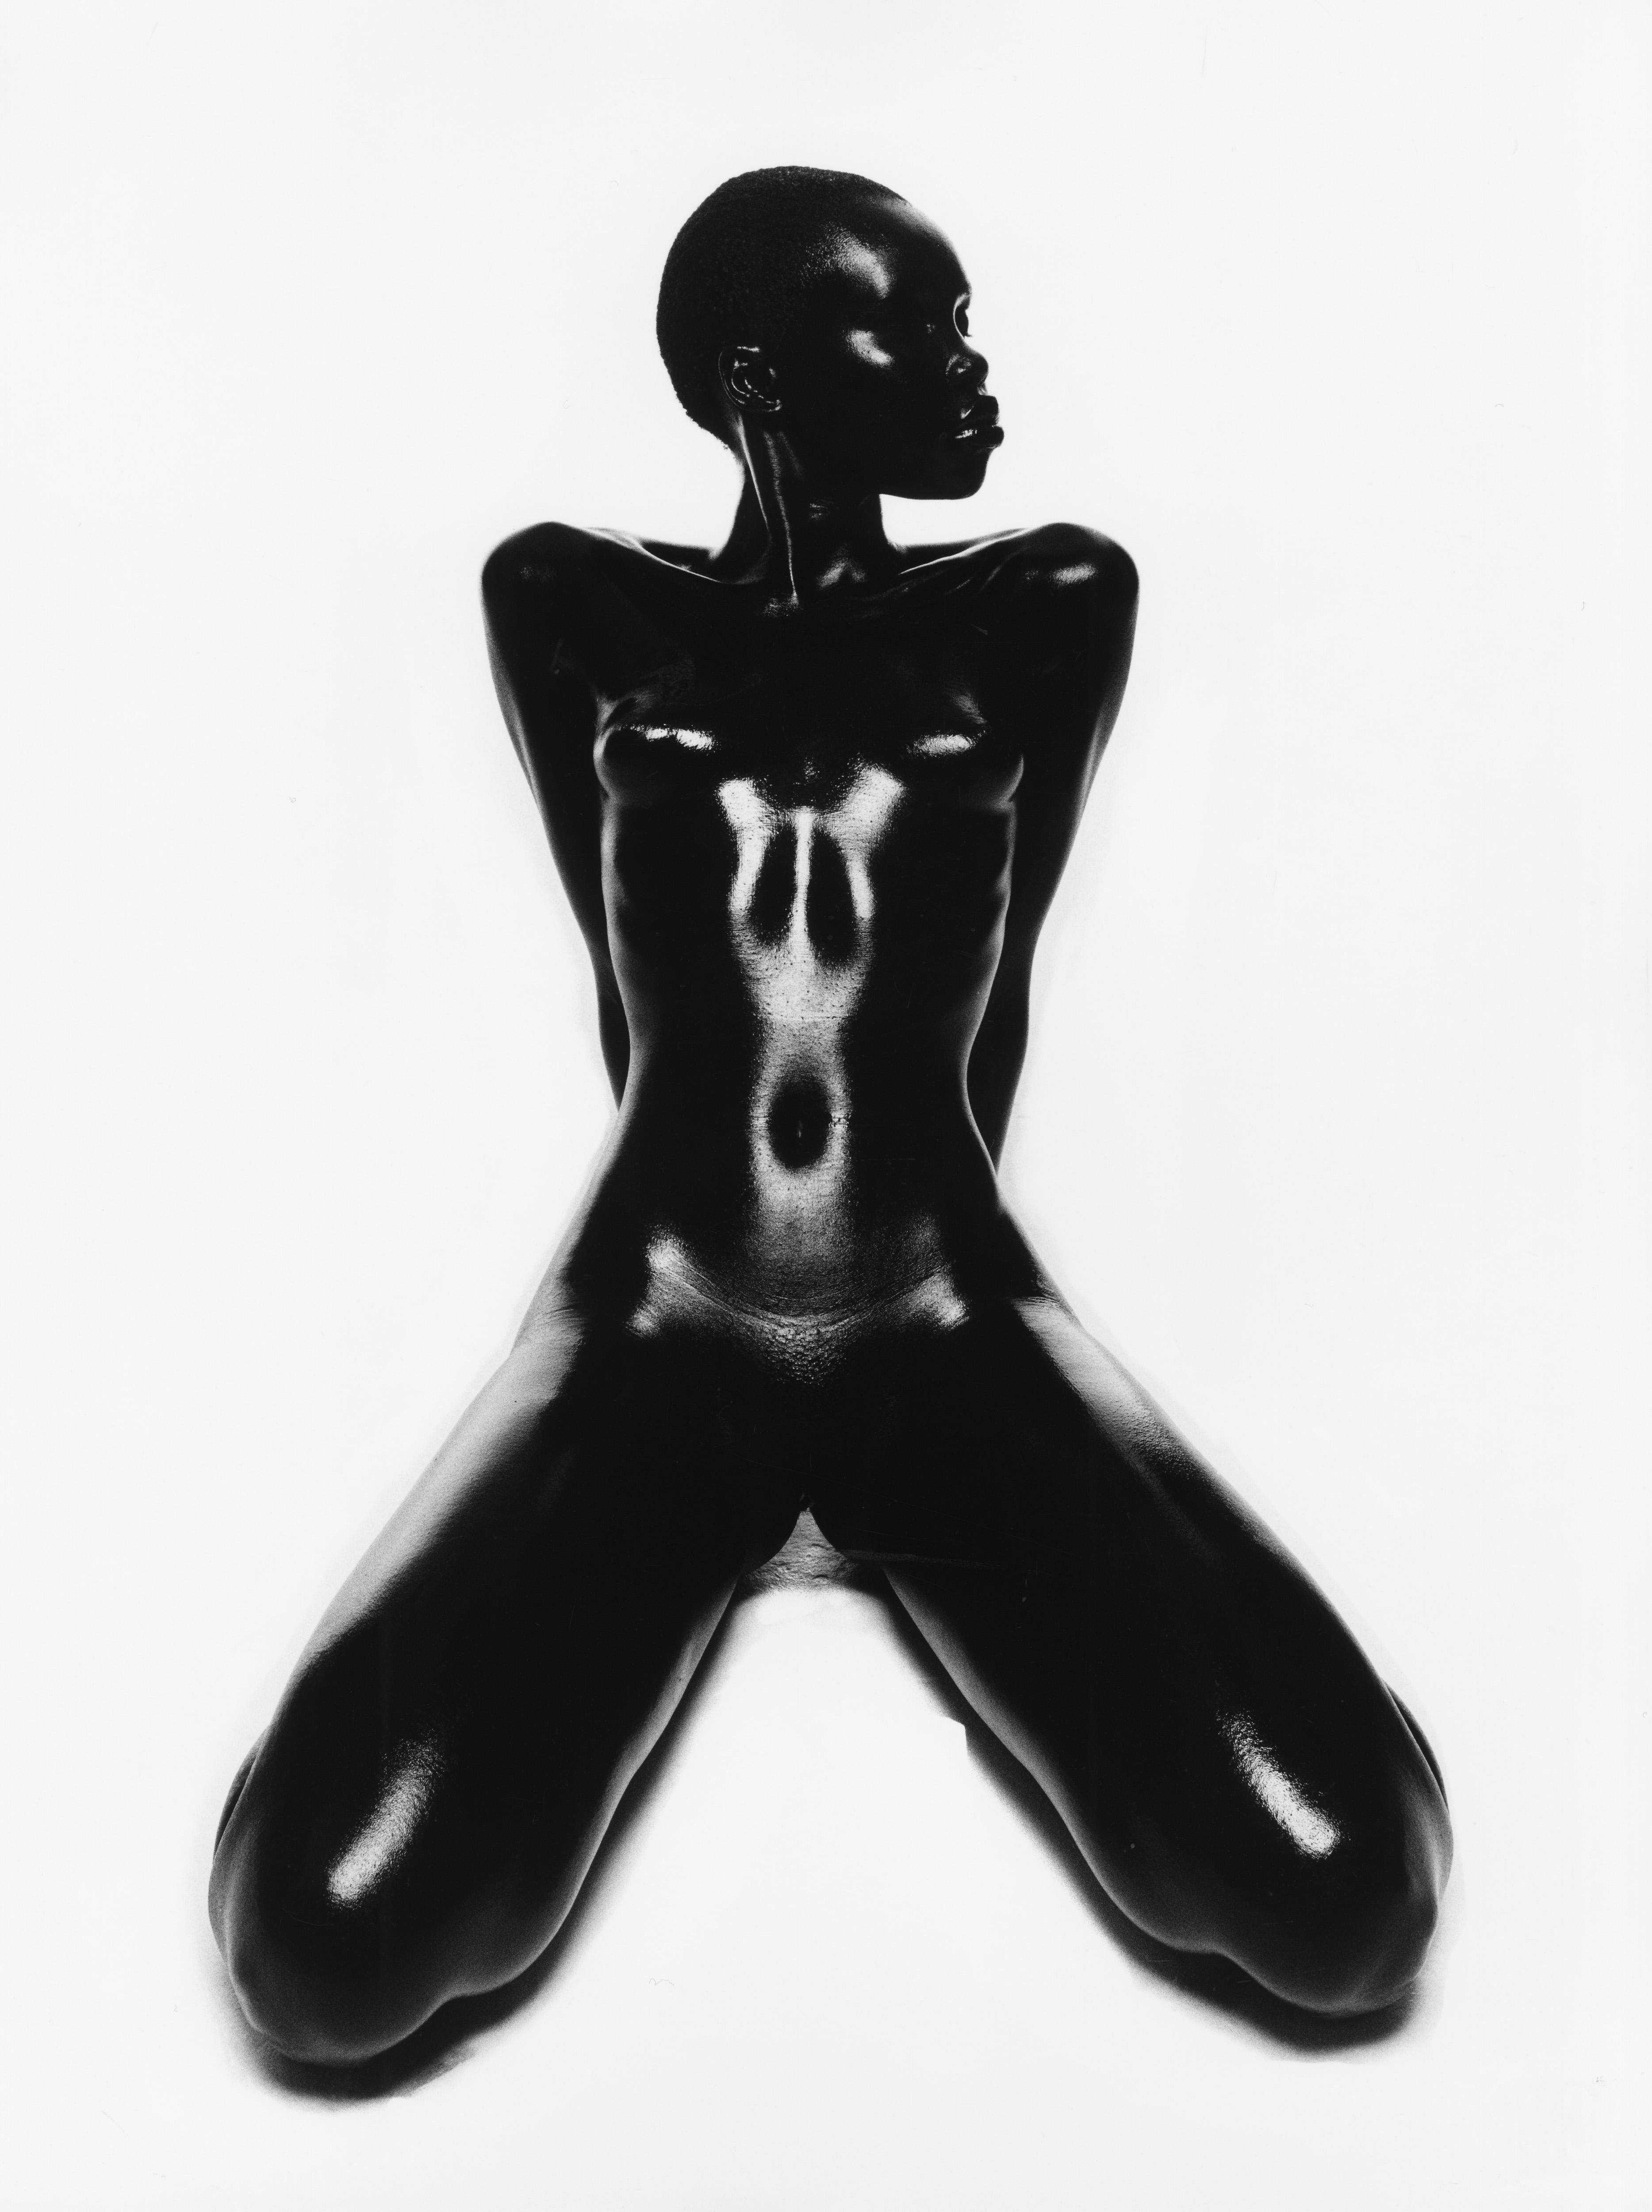 Thierry Le Gouès Black and White Photograph - Clara, Paris 1997